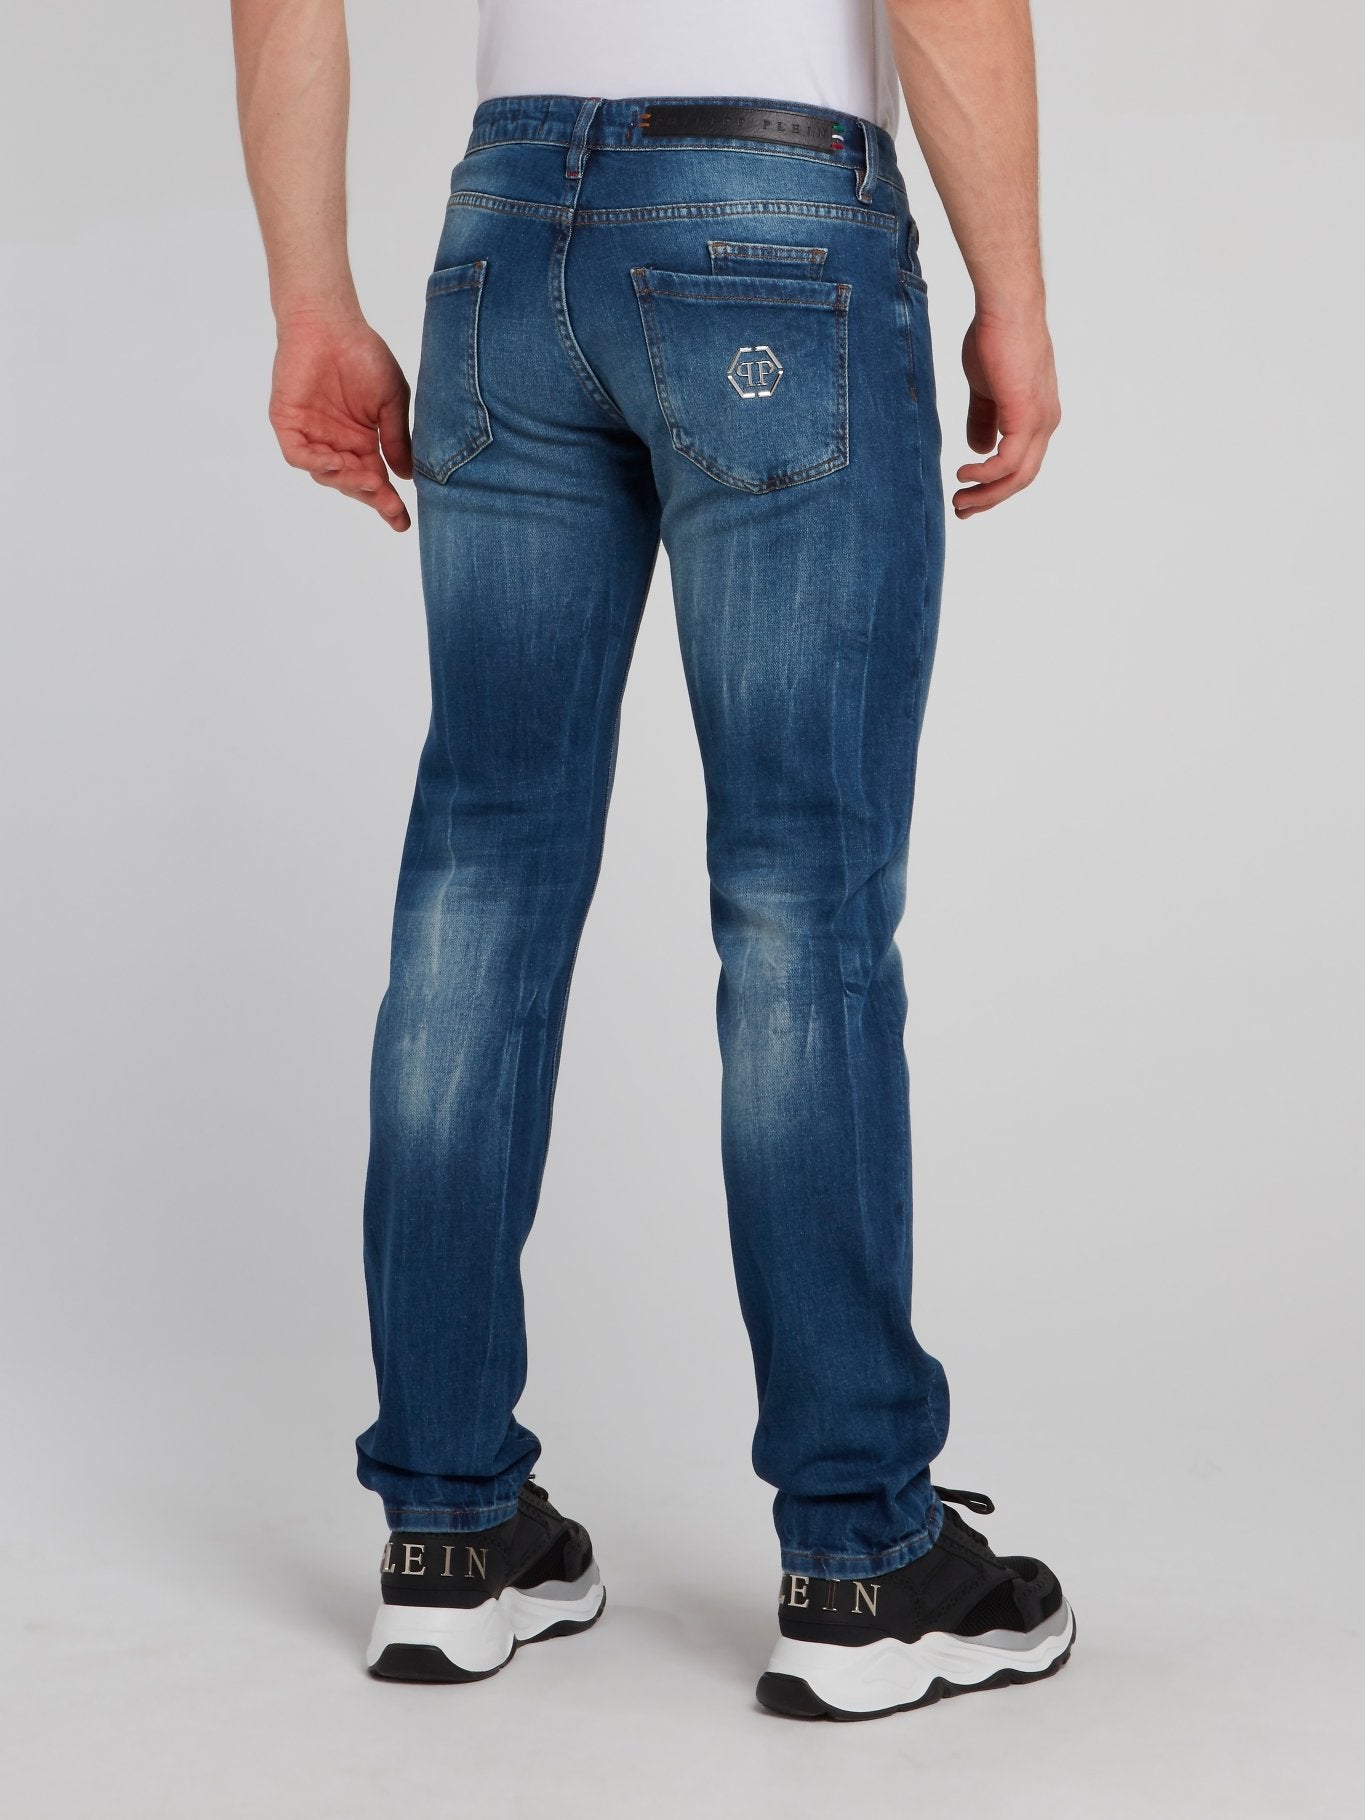 Distressed Straight Cut Denim Jeans